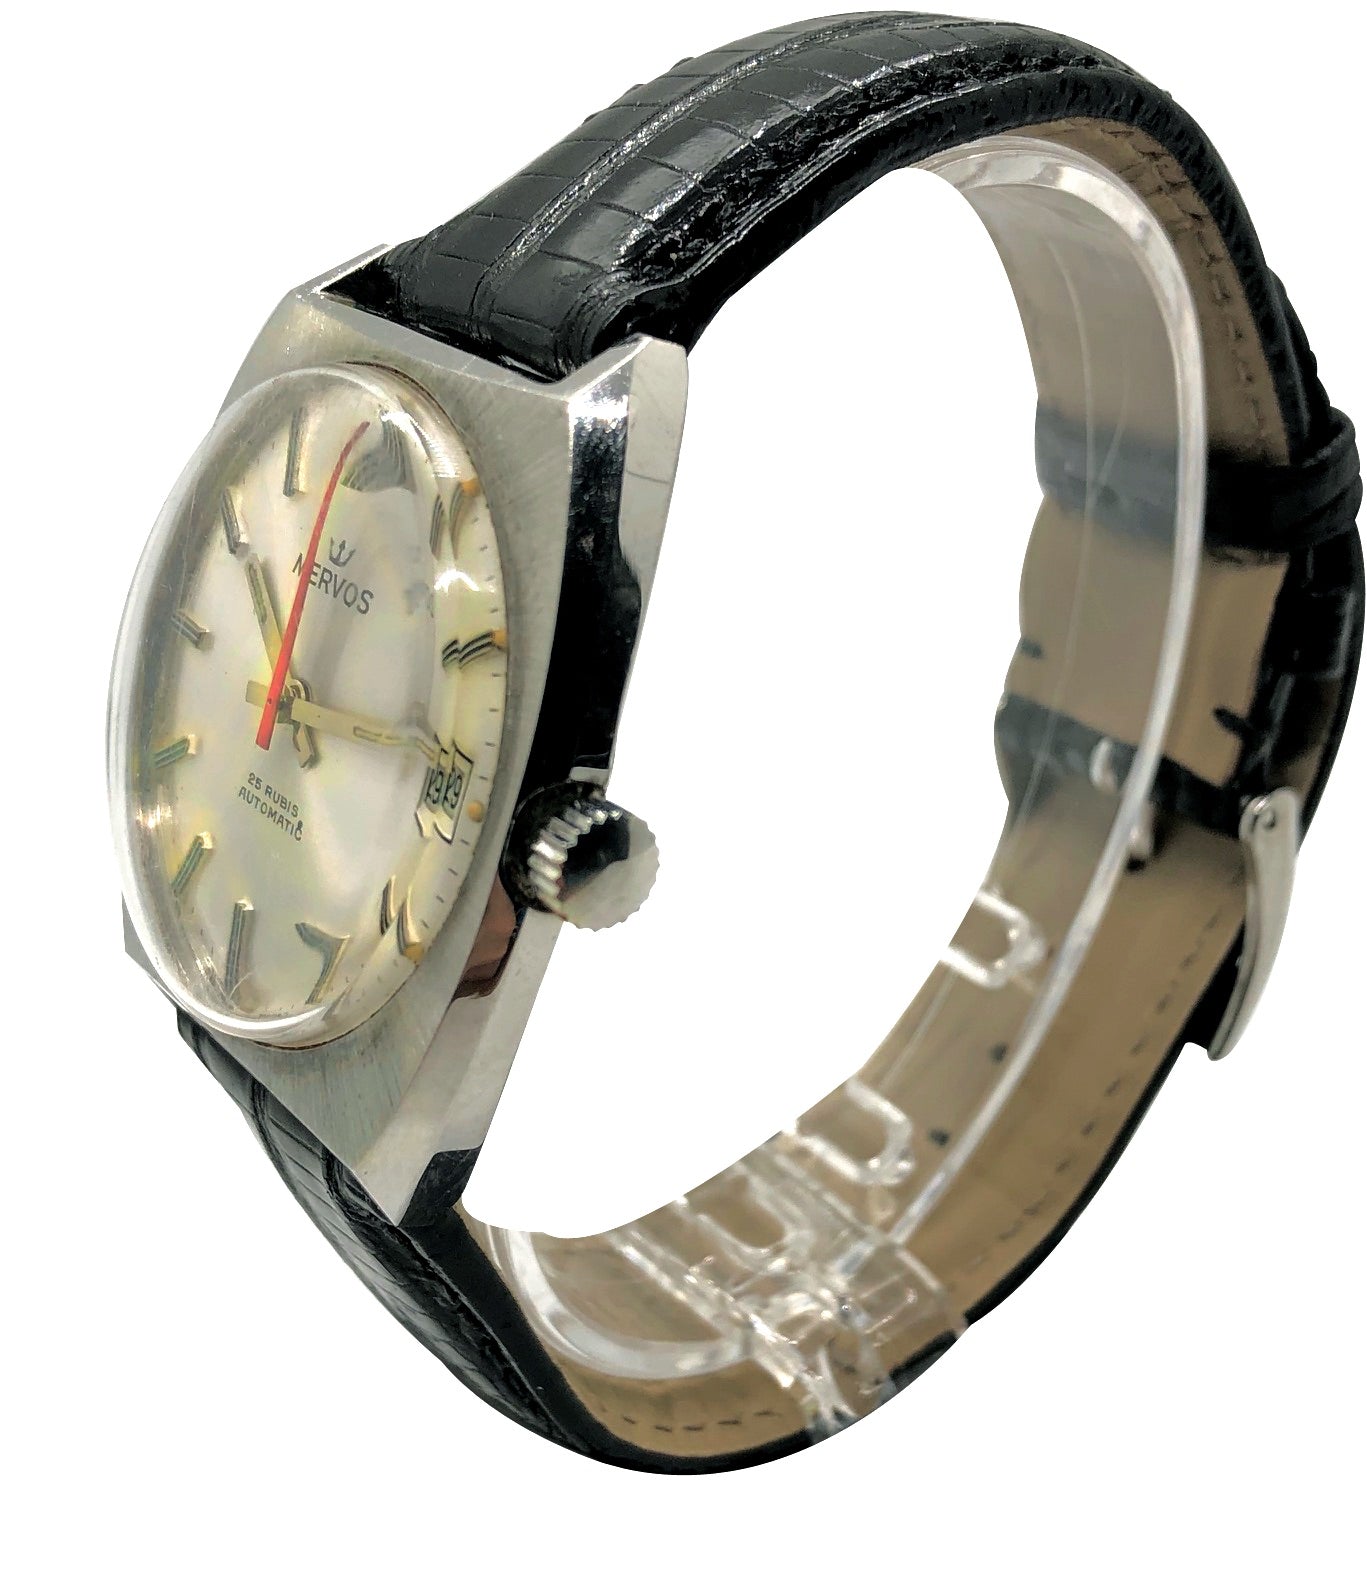 Pre-Owned Vintage Mervos Automatic - The Watch Aficionado